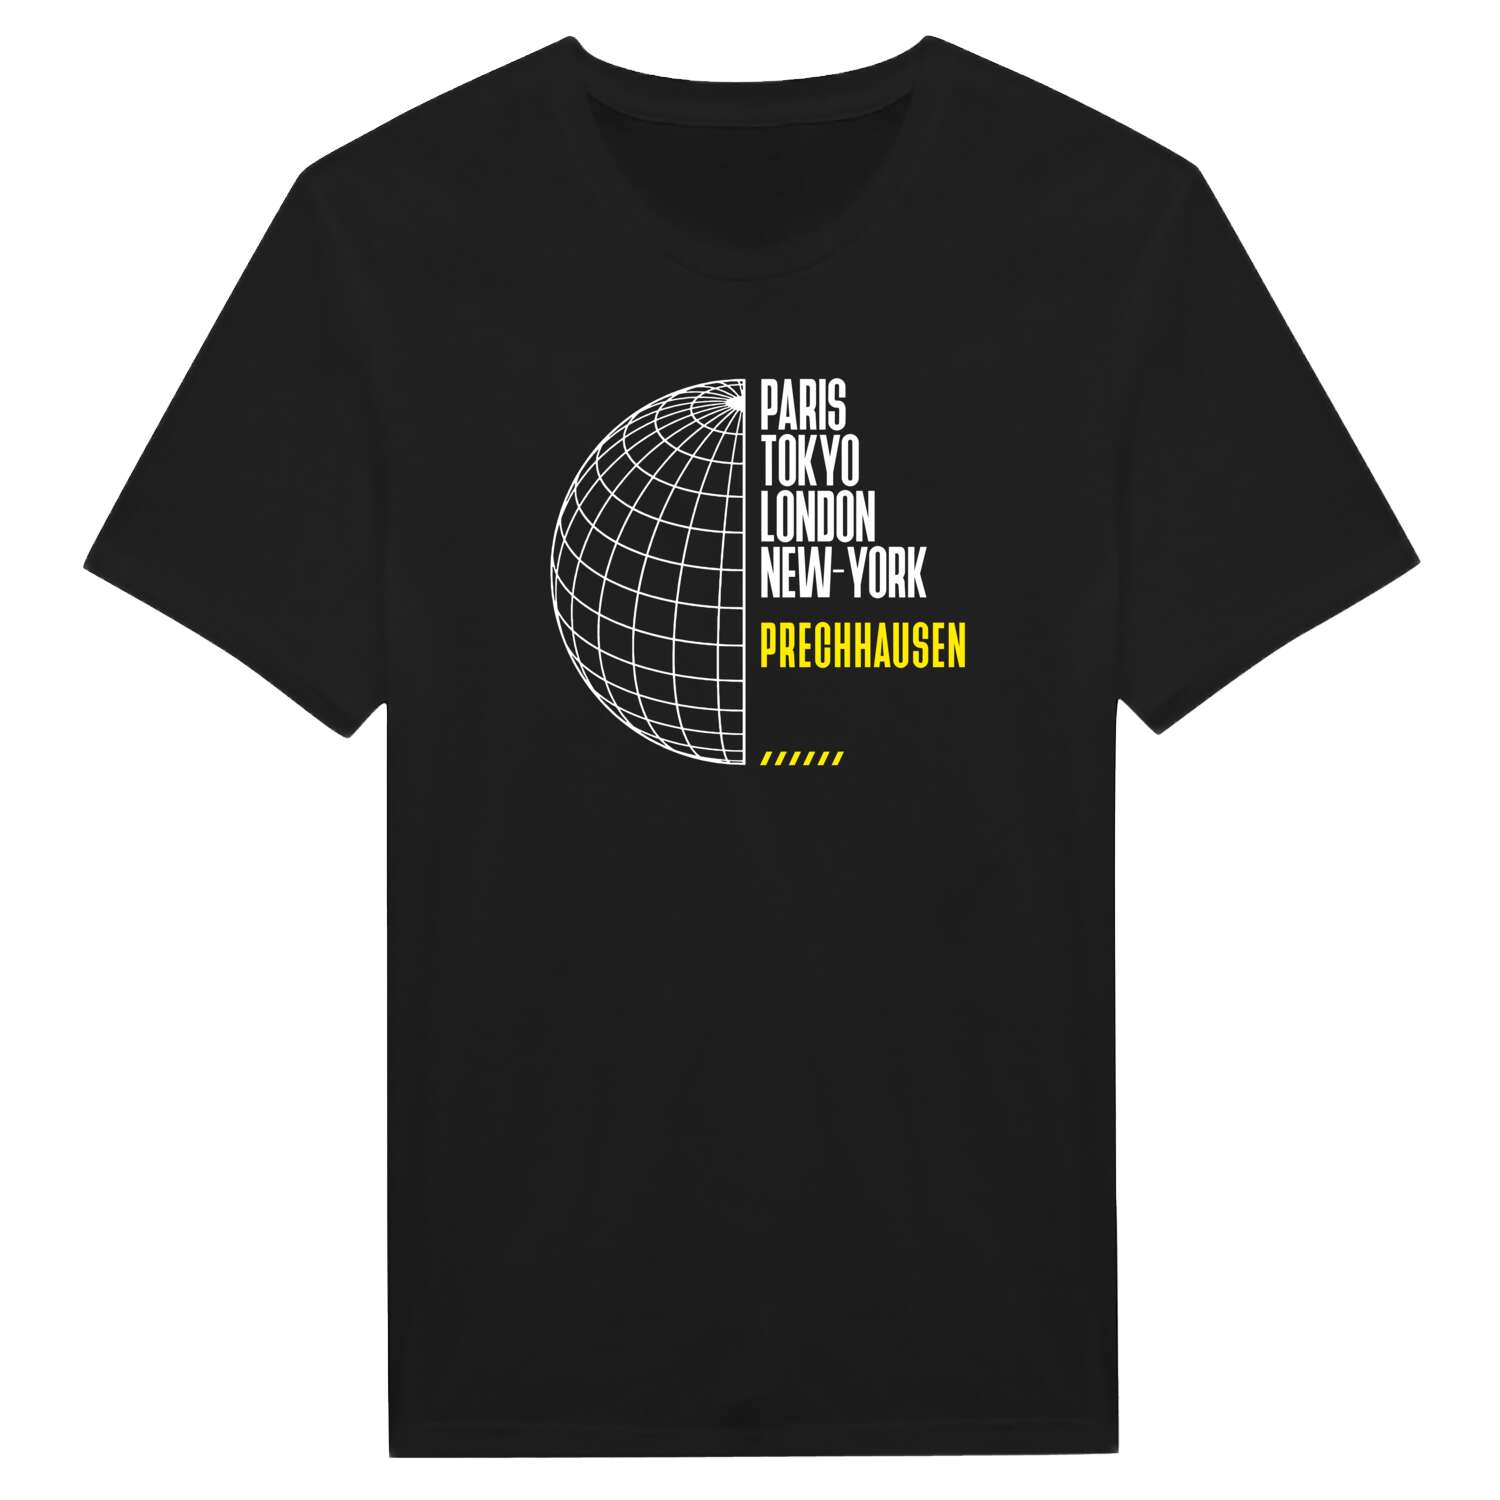 Prechhausen T-Shirt »Paris Tokyo London«